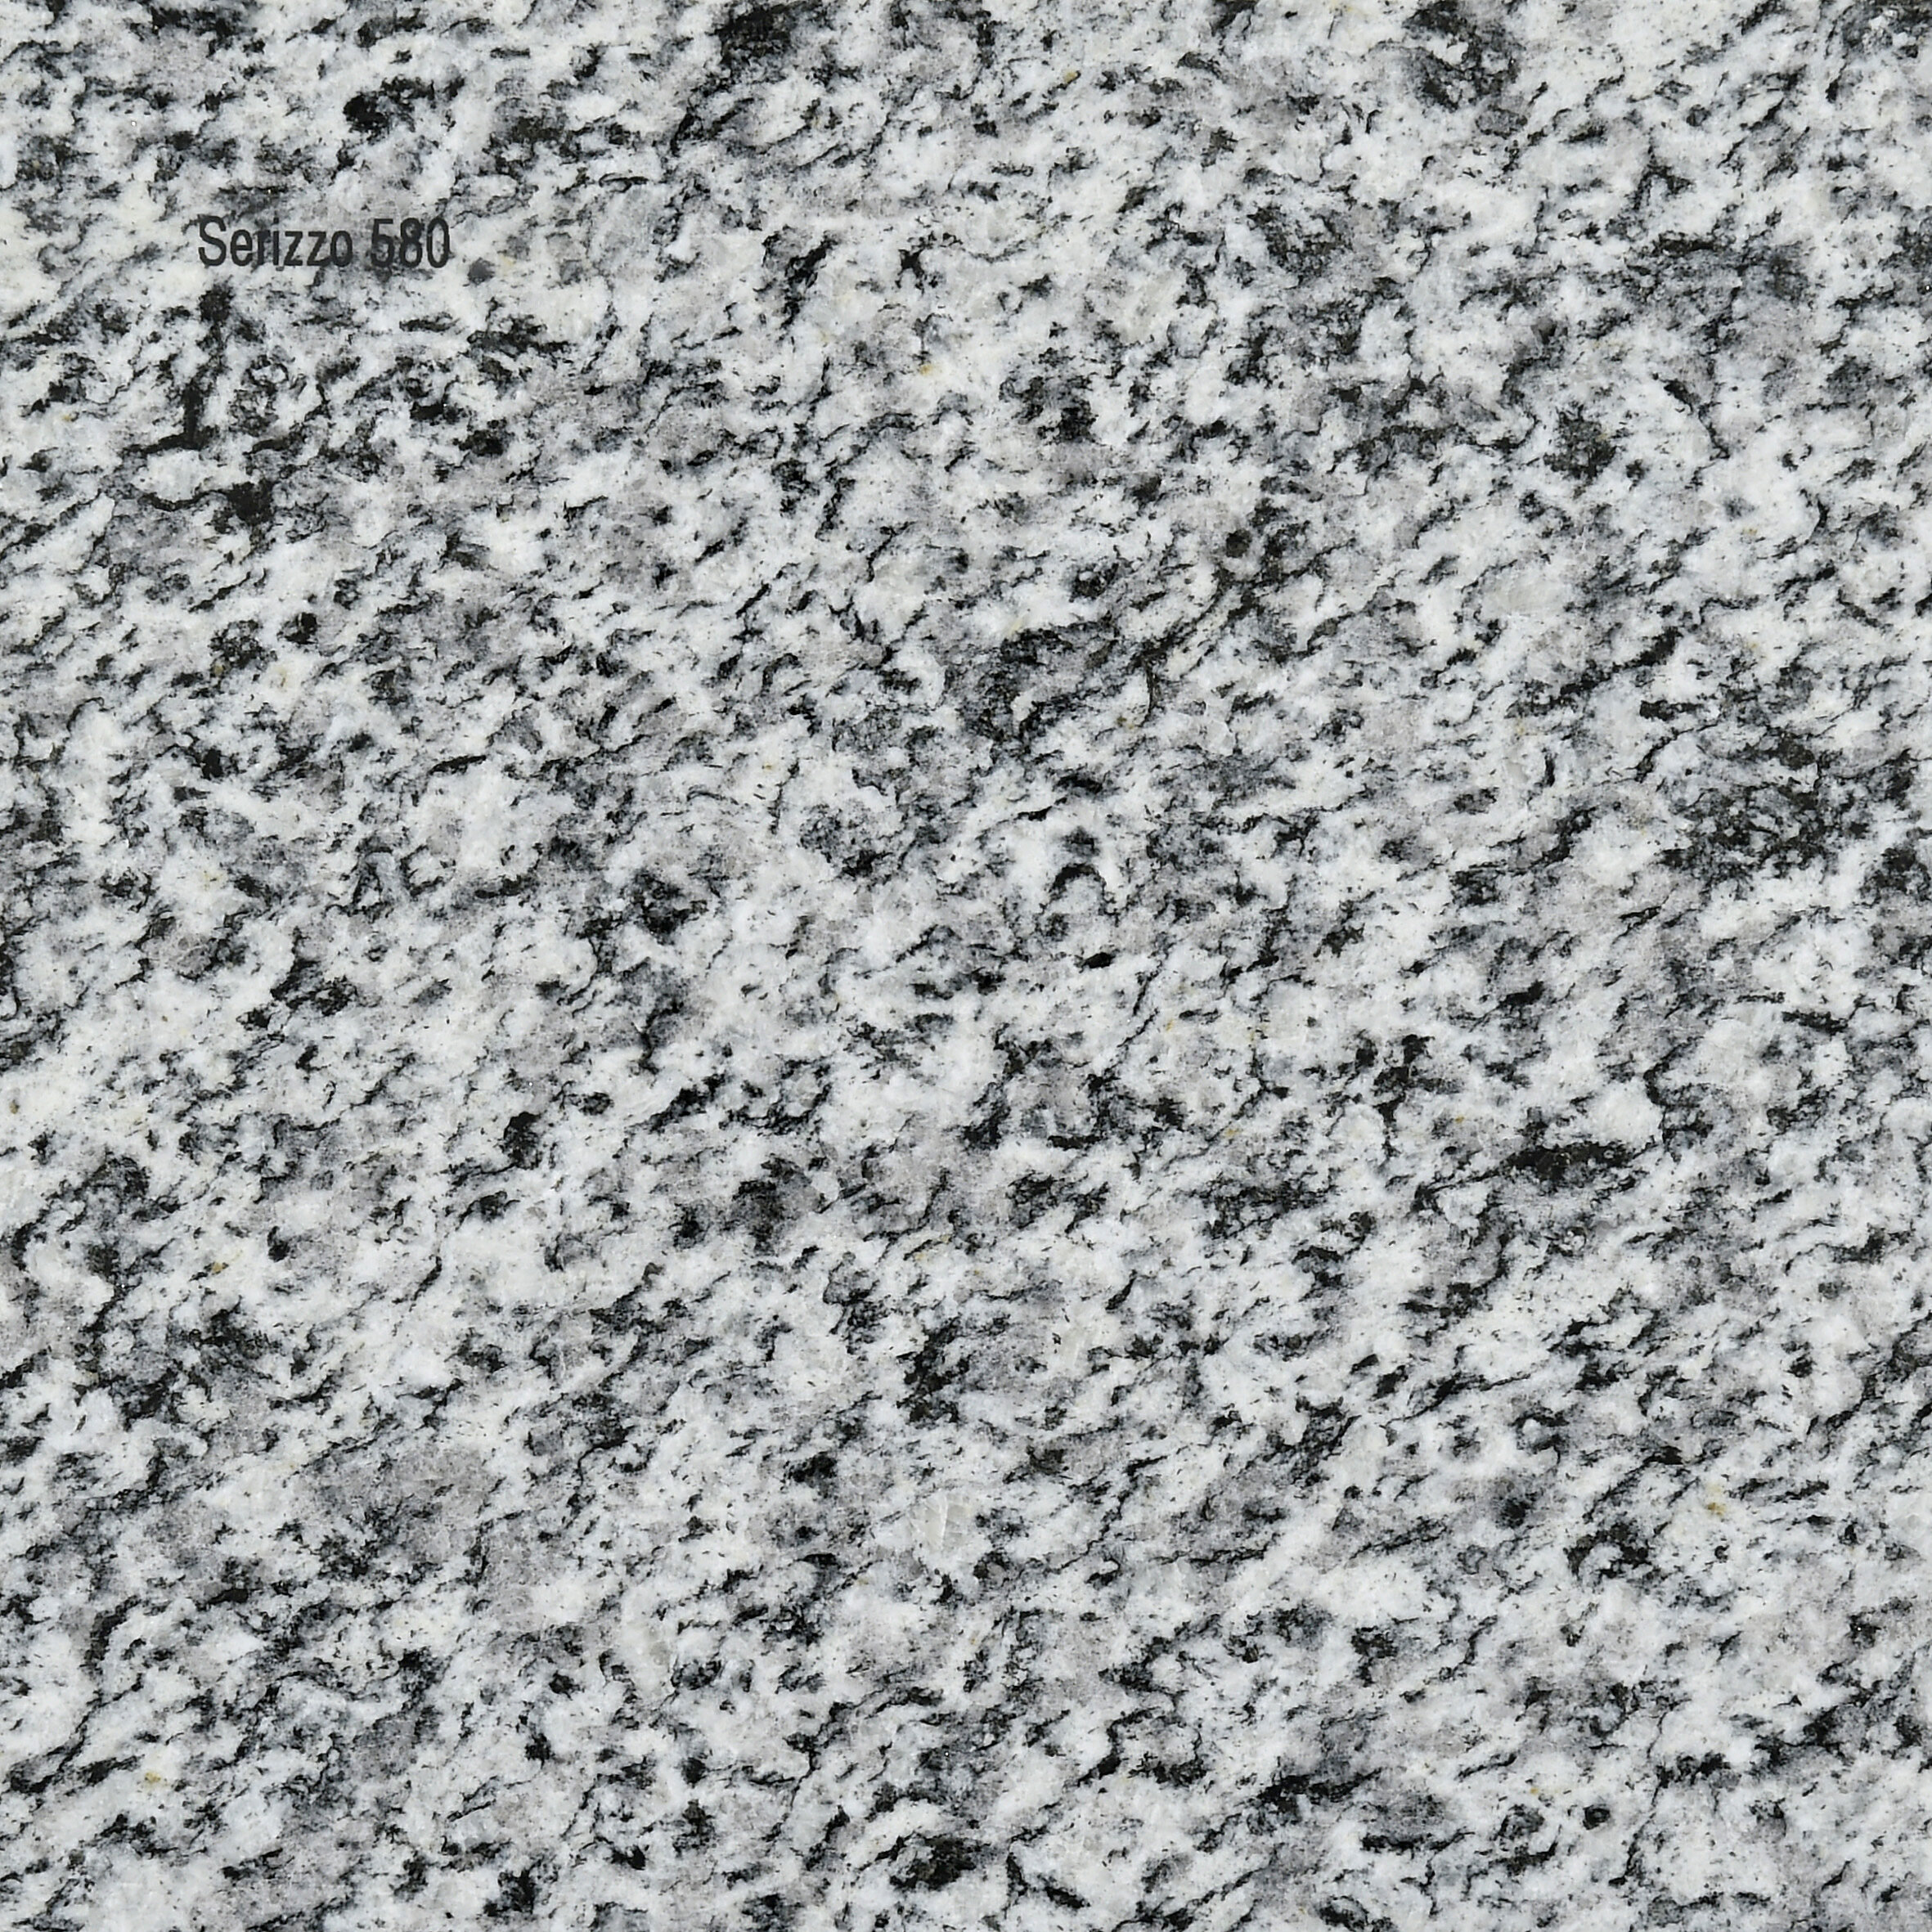 Granit_Serizzo 580.JPG